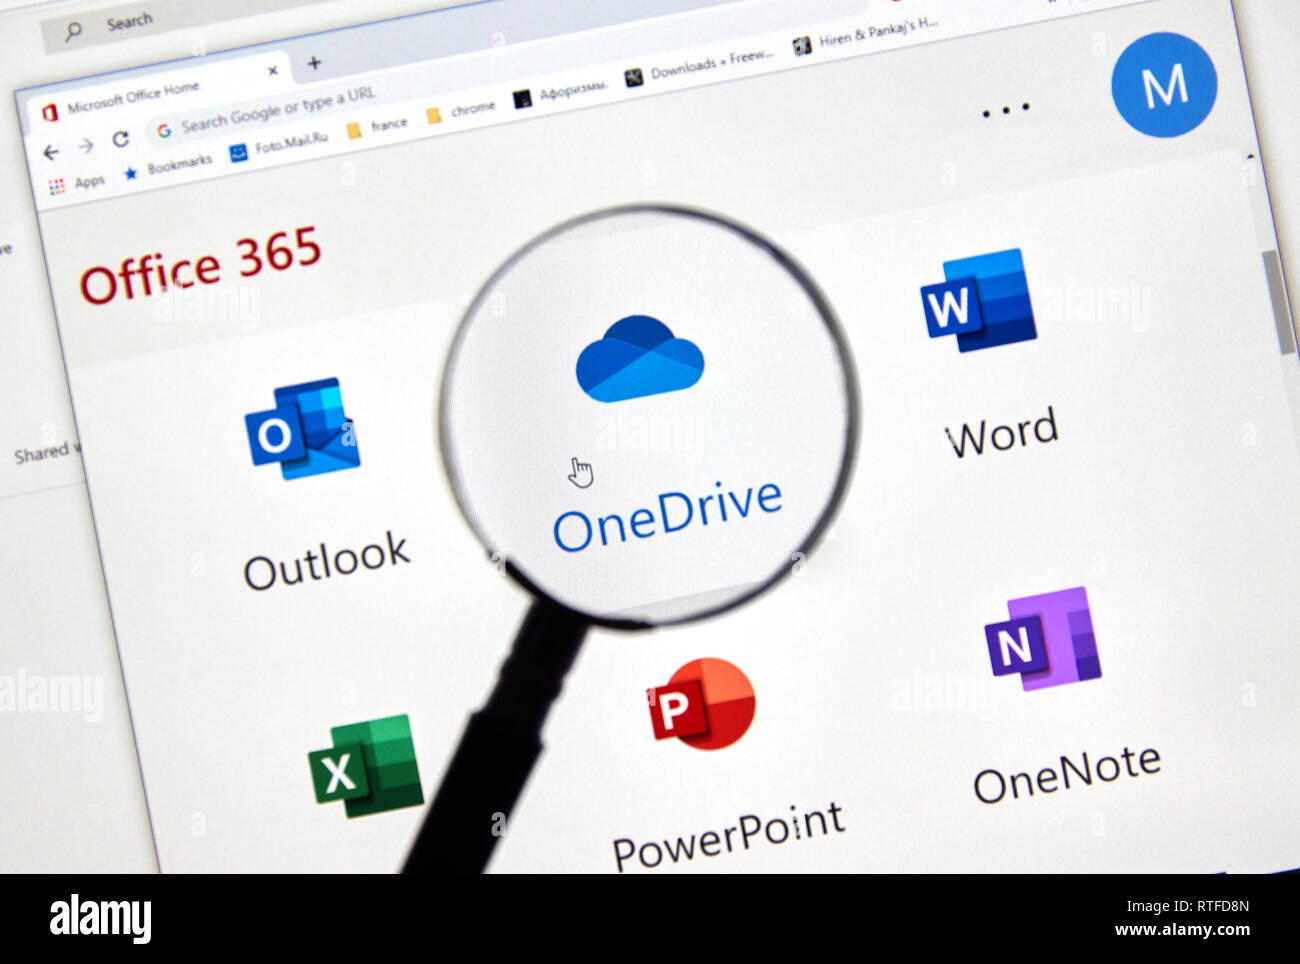 MONTREAL, KANADA - 28. FEBRUAR 2019: Microsoft OneDrive neues Symbol. Office 365 ist der Markenname Microsoft verwendet für eine Gruppe von Abonnements, die PROVI Stockfoto